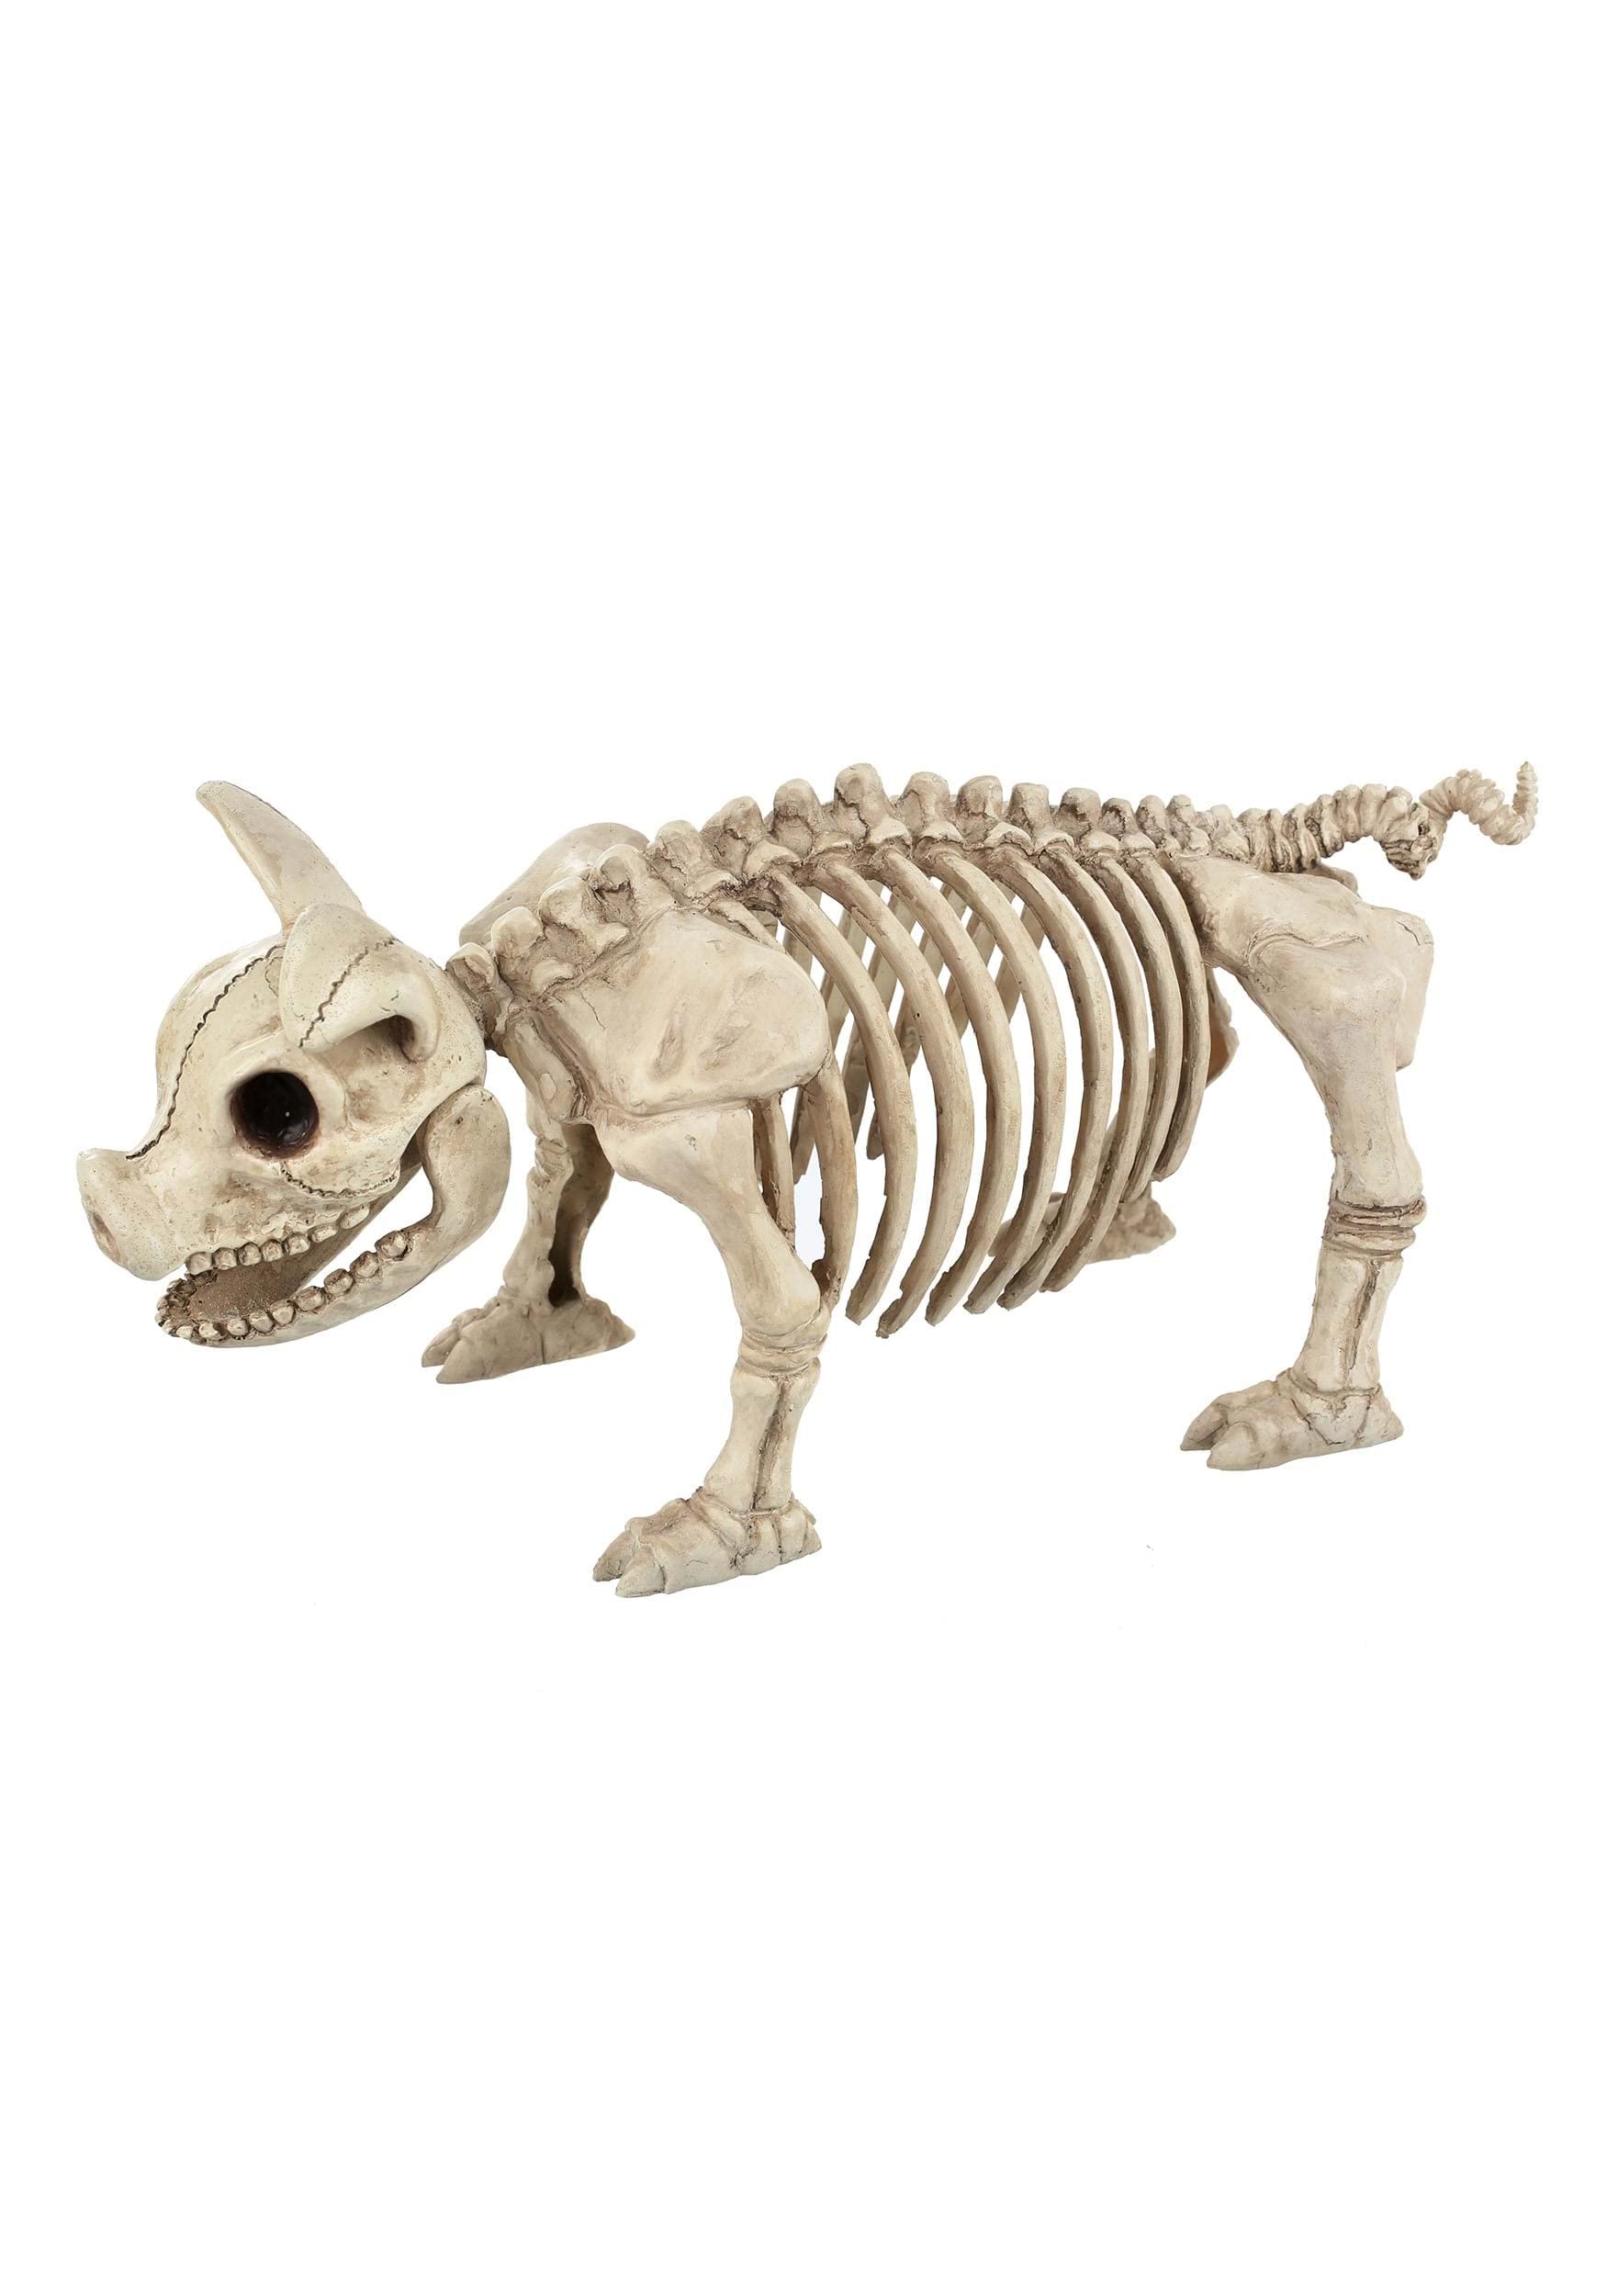 A pig skeleton.